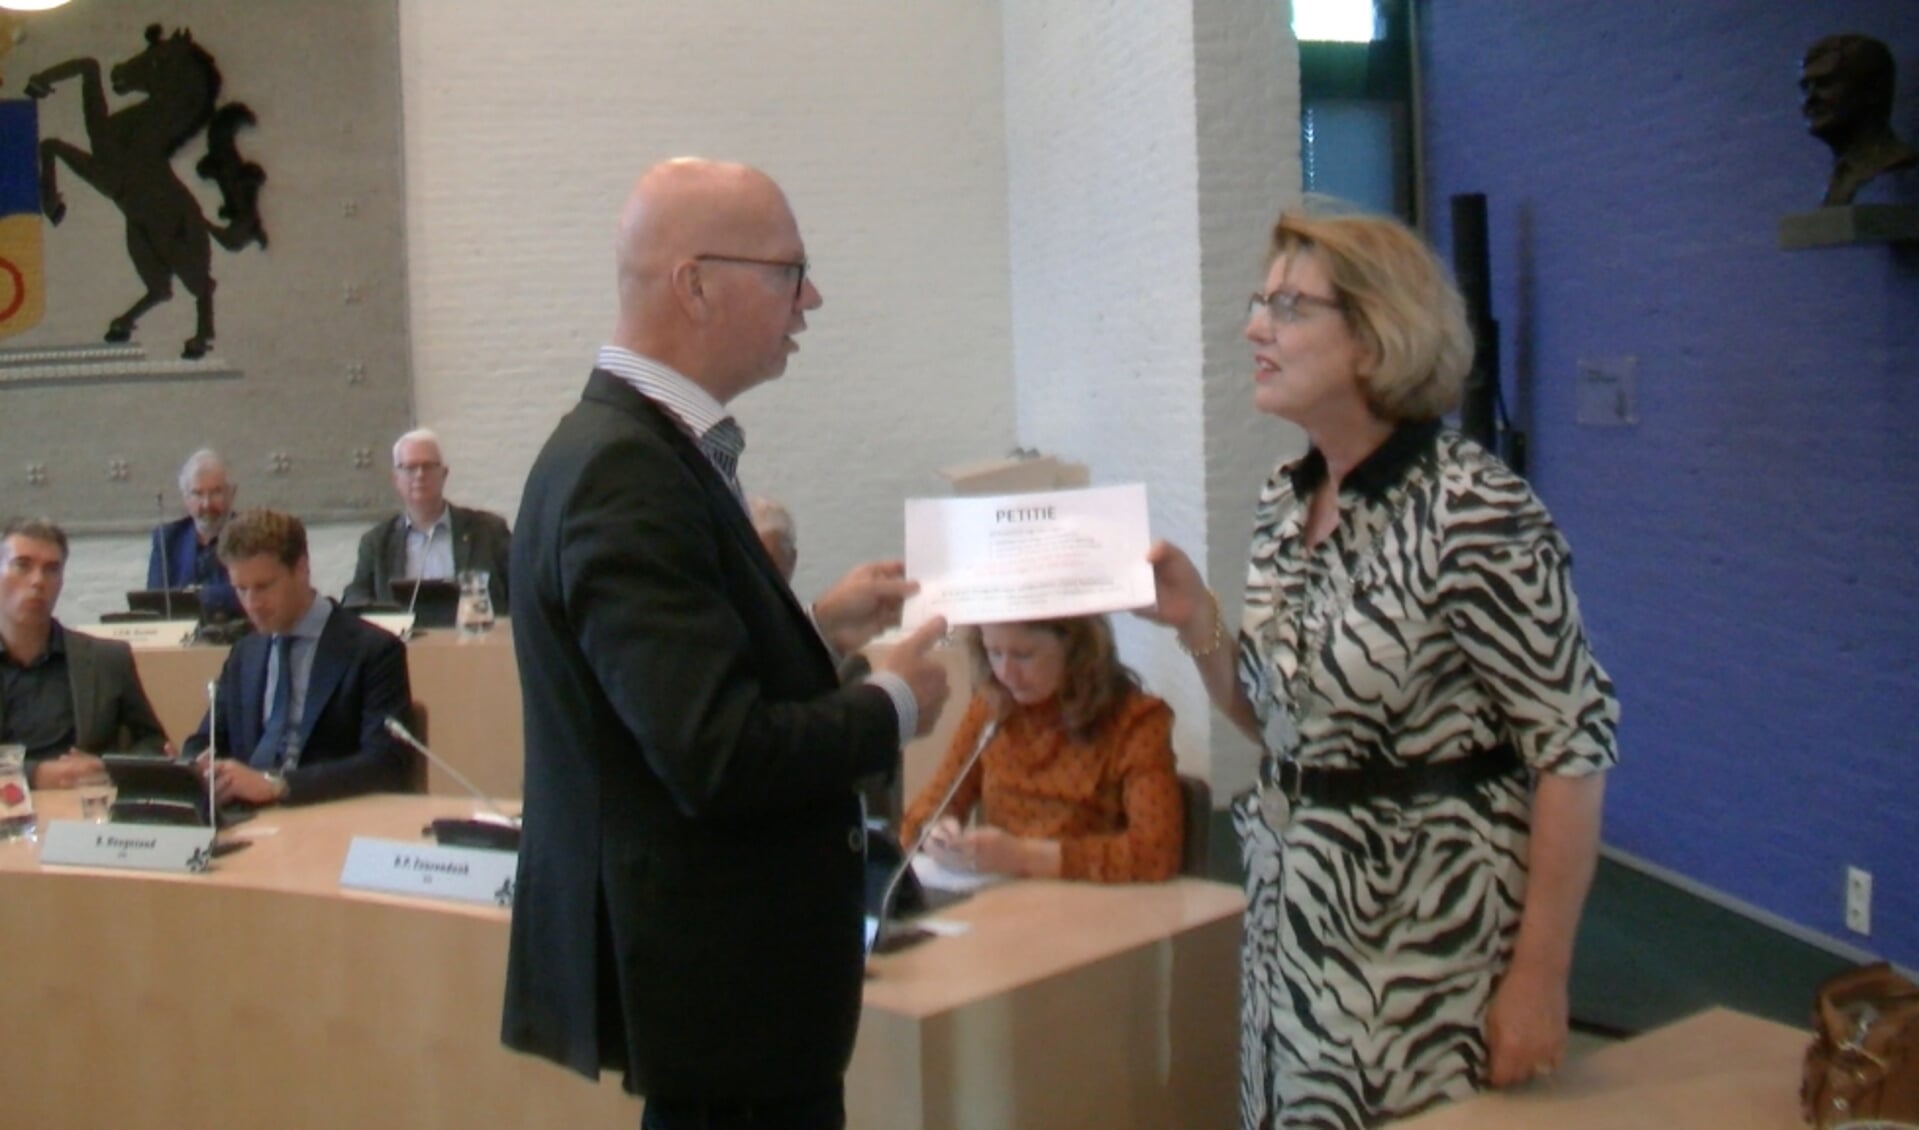  Hans van Veen overhandigde vorig jaar een petitie aan toenmalig burgemeester Ineke Bakker.